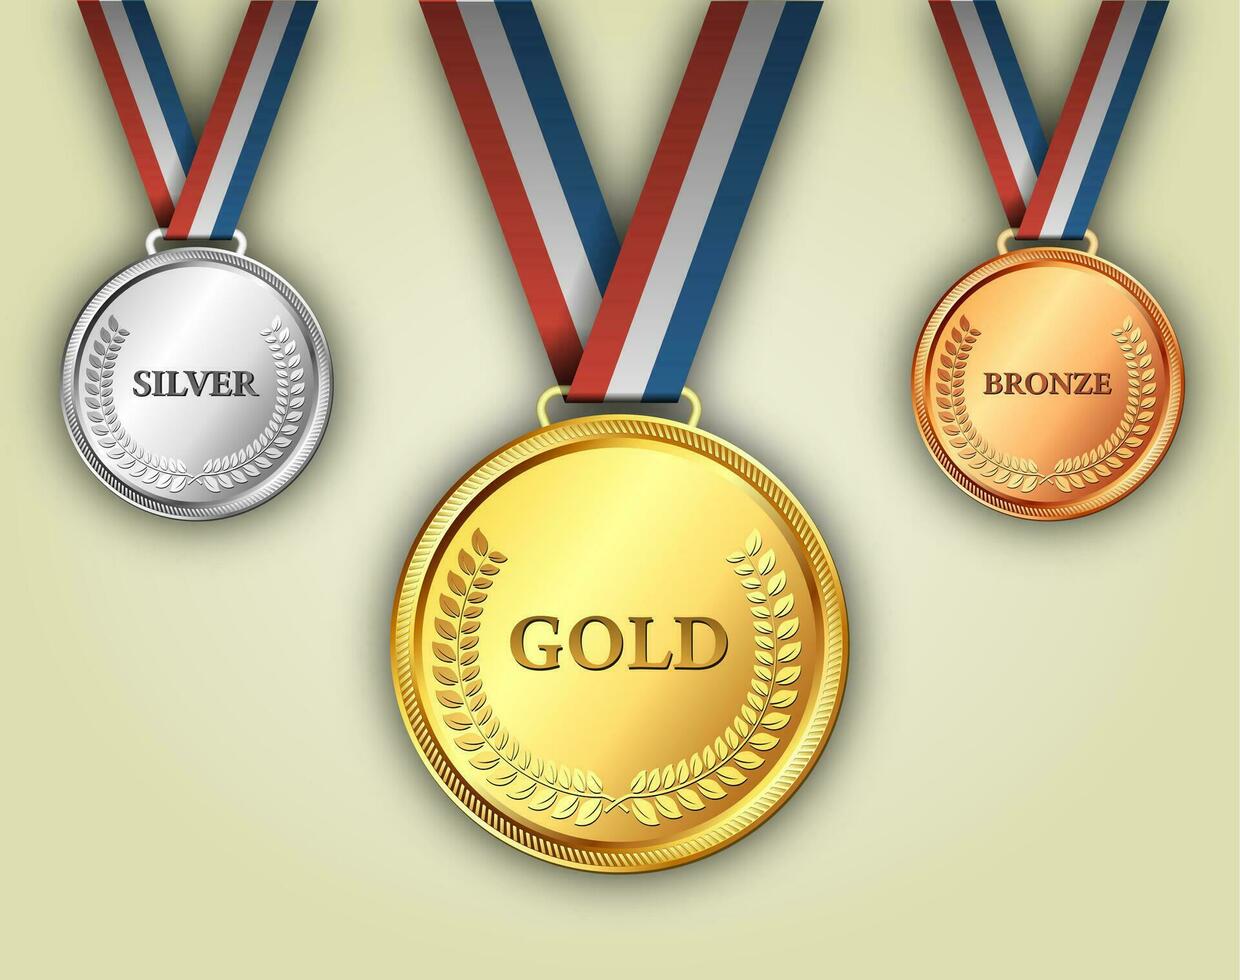 set di medaglie d'oro, d'argento e di bronzo vettore